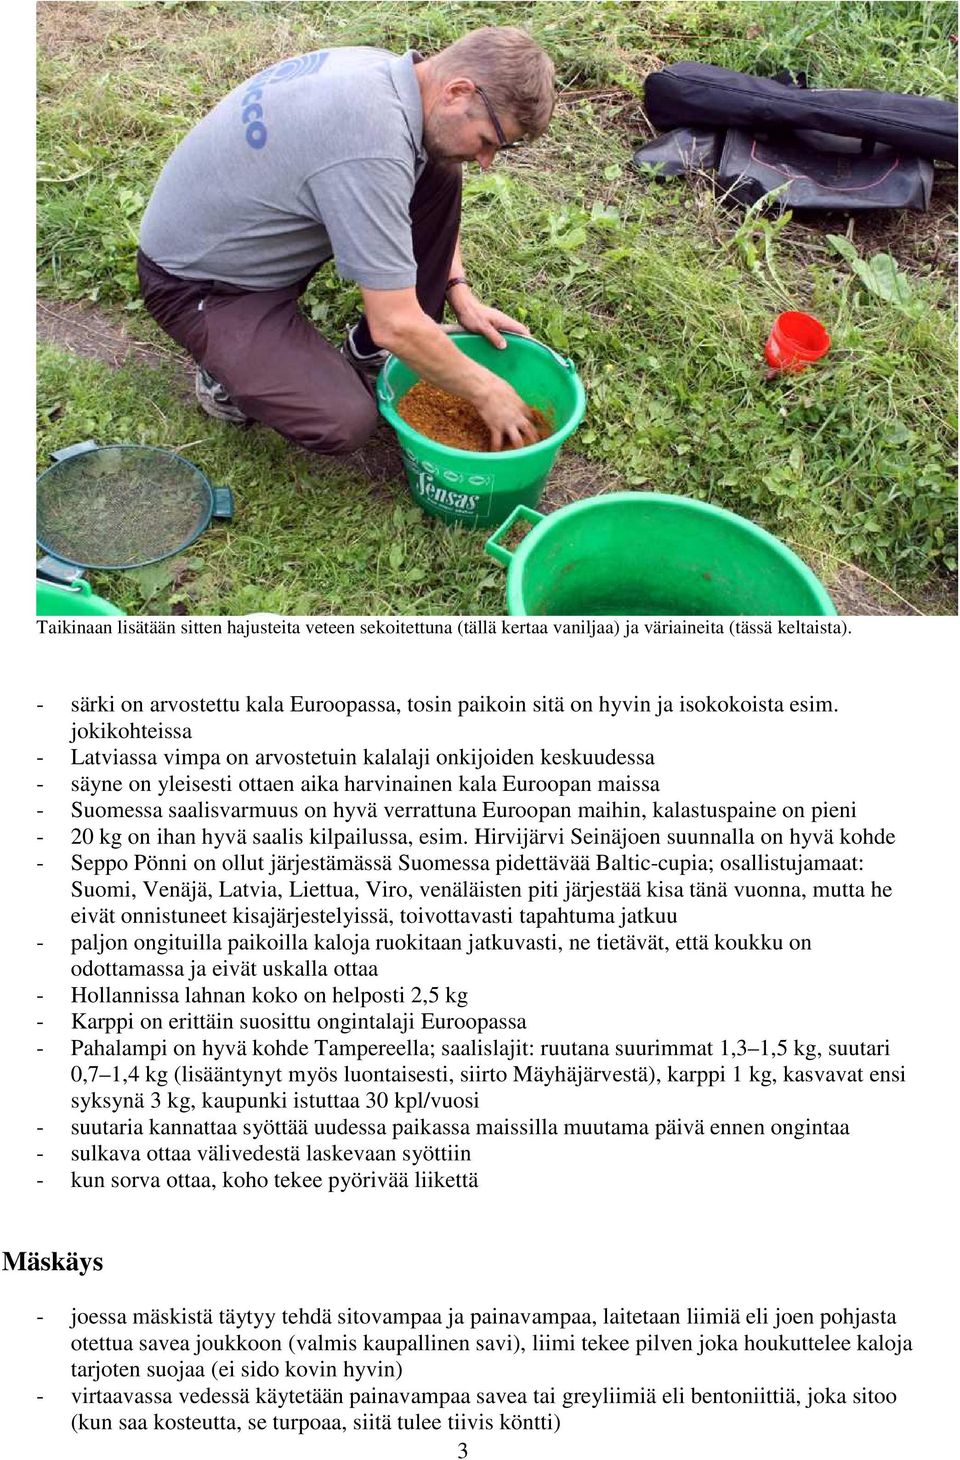 jokikohteissa - Latviassa vimpa on arvostetuin kalalaji onkijoiden keskuudessa - säyne on yleisesti ottaen aika harvinainen kala Euroopan maissa - Suomessa saalisvarmuus on hyvä verrattuna Euroopan